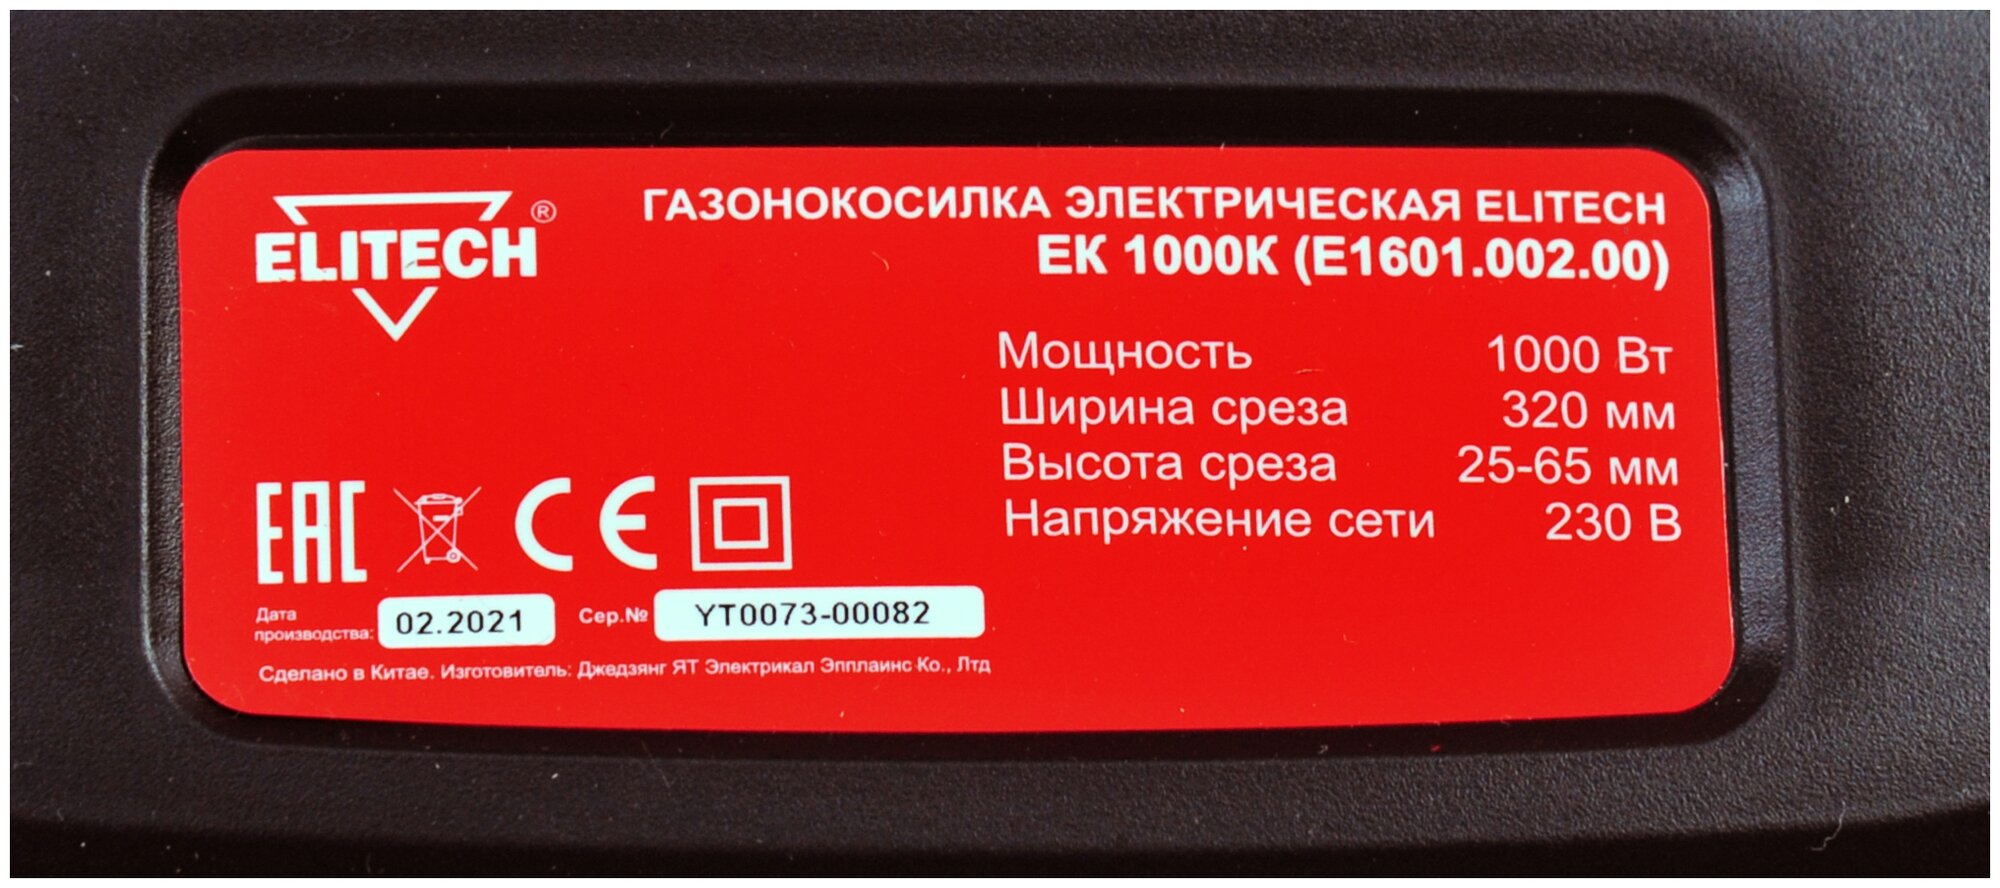 Электрическая газонокосилка ELITECH ЕК 1000К 1000 Вт 32